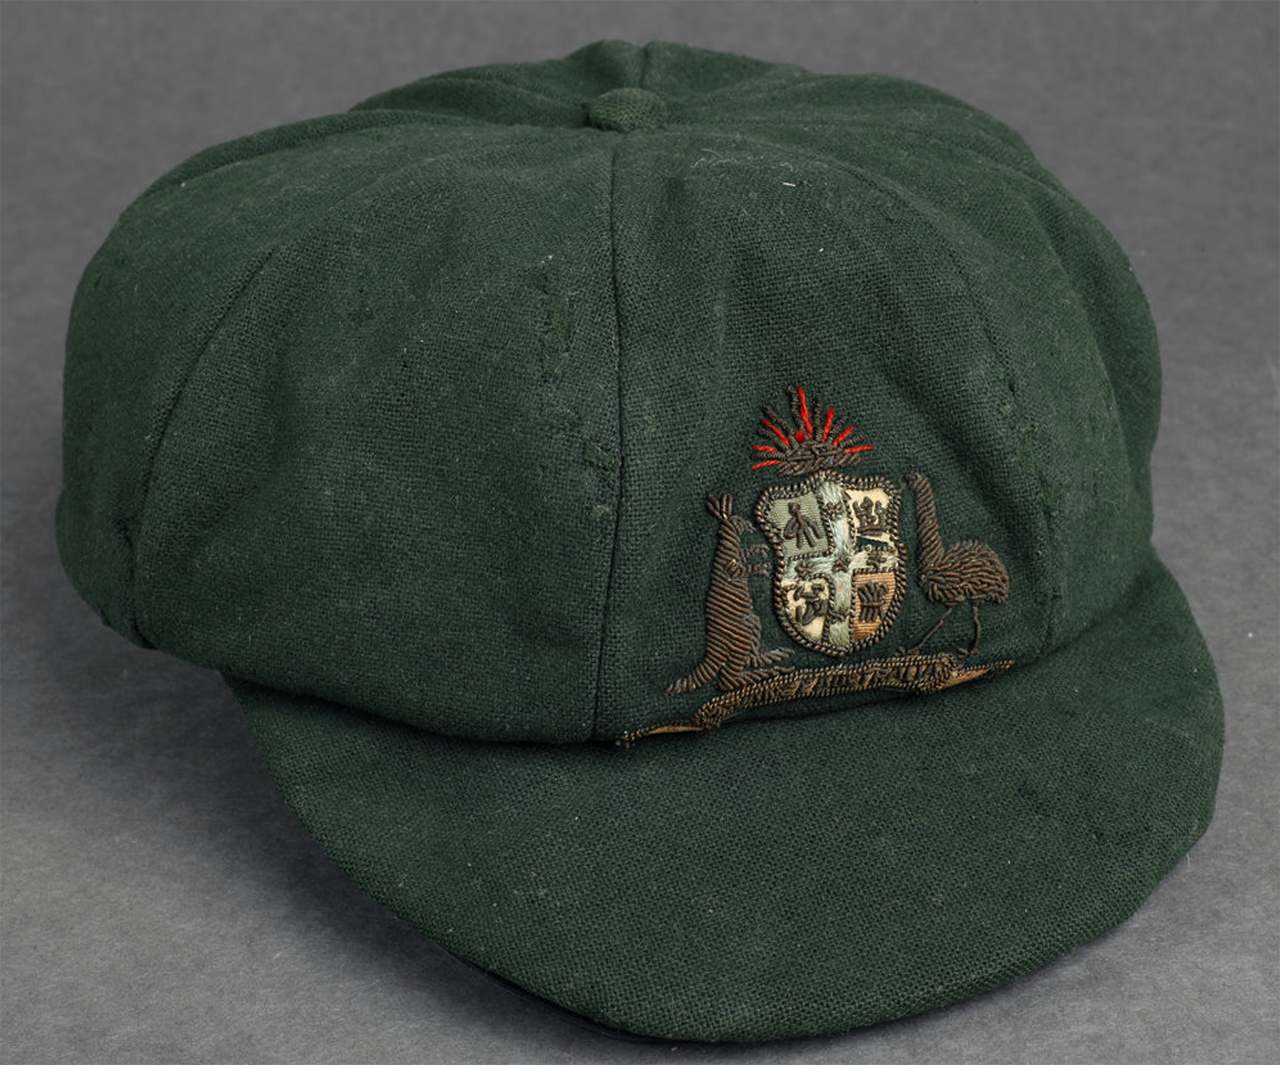 Bradman's baggy green cap, 1928-29 test series [D 8204 (Misc)]